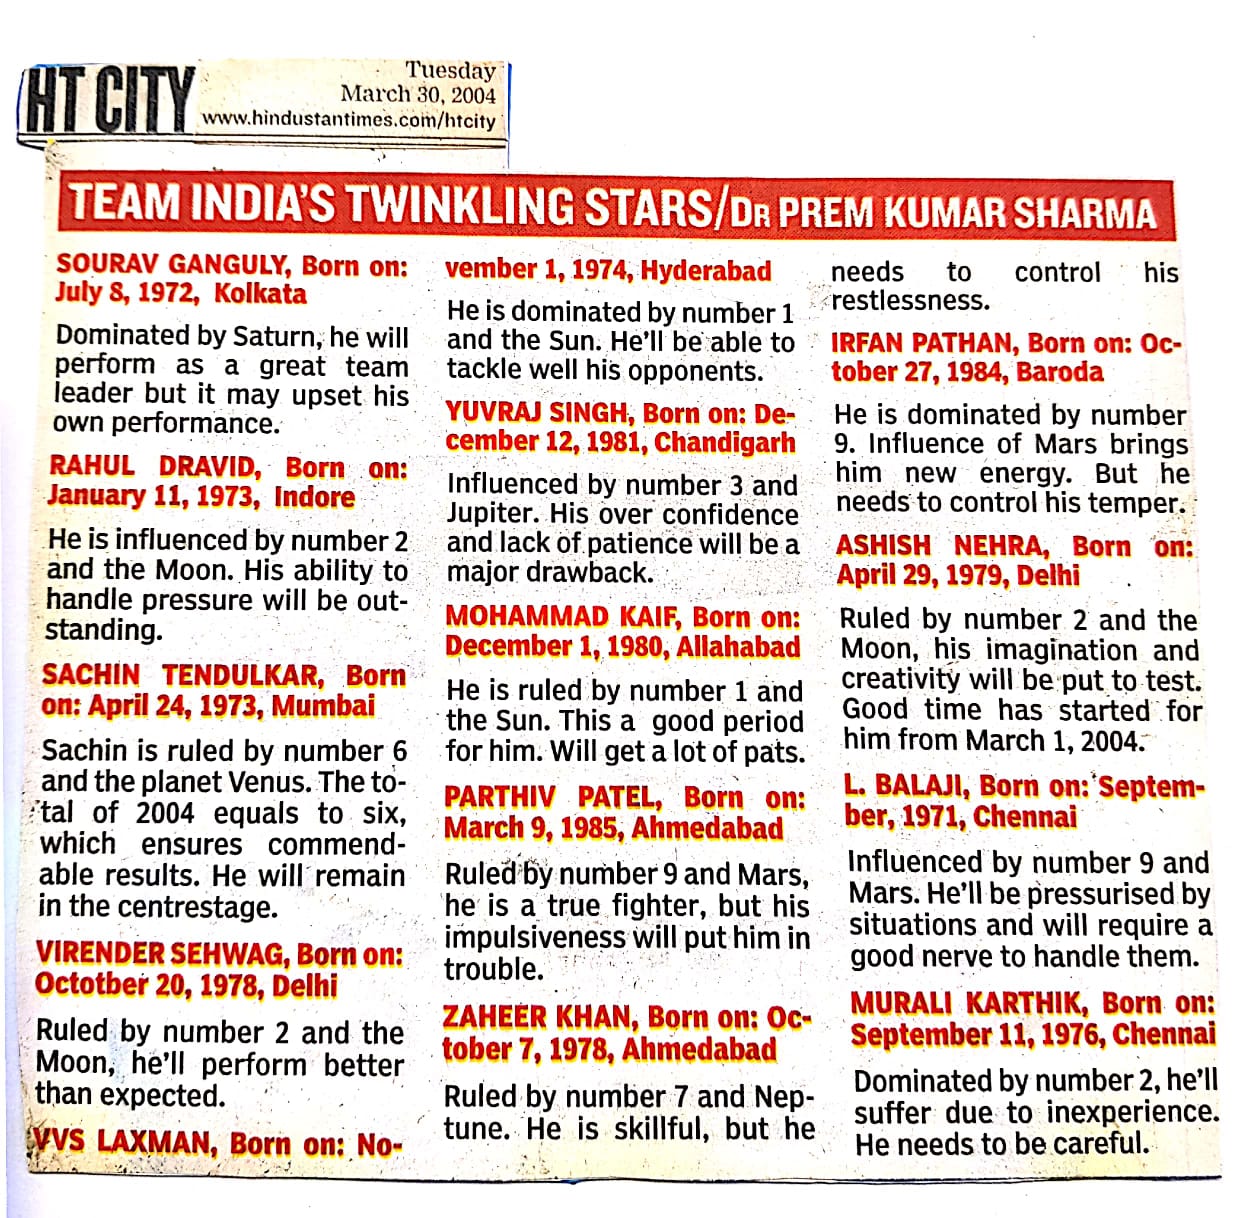 Team India's Twinkling Stars/ Dr Prem Kumar Sharma